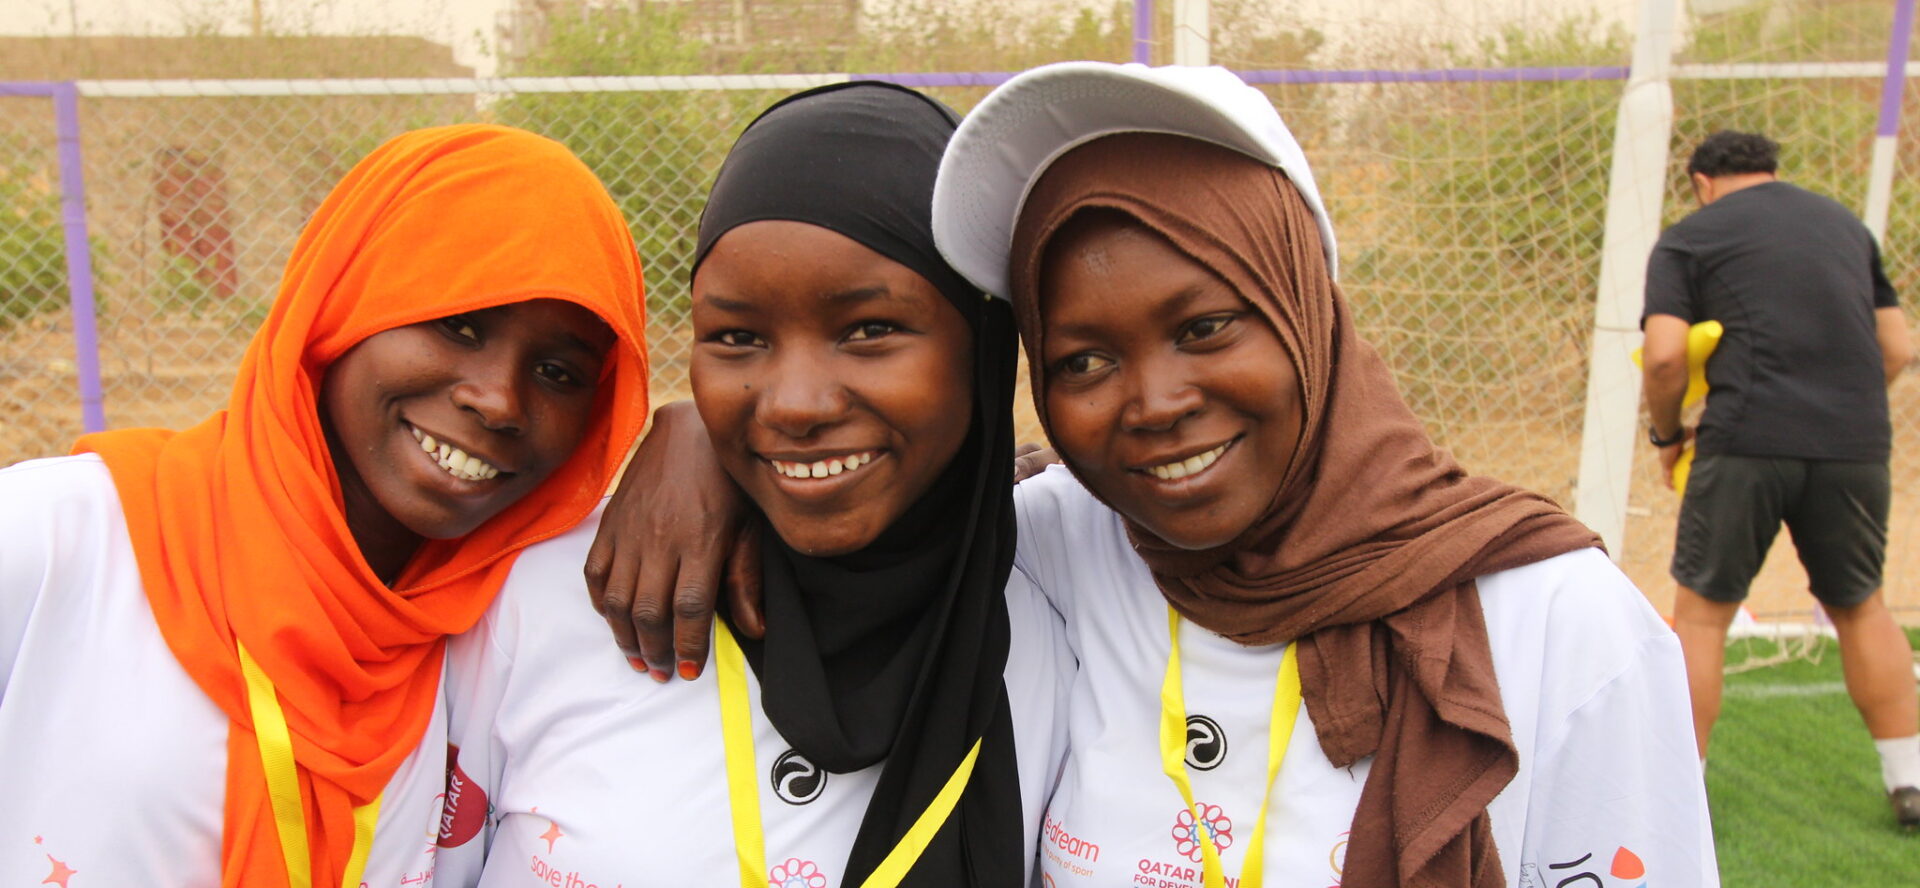 Le sport peut être un outil d'intégration, notamment pour les femmes | © Darfur Dreams/Flickr/CC BY 2.0